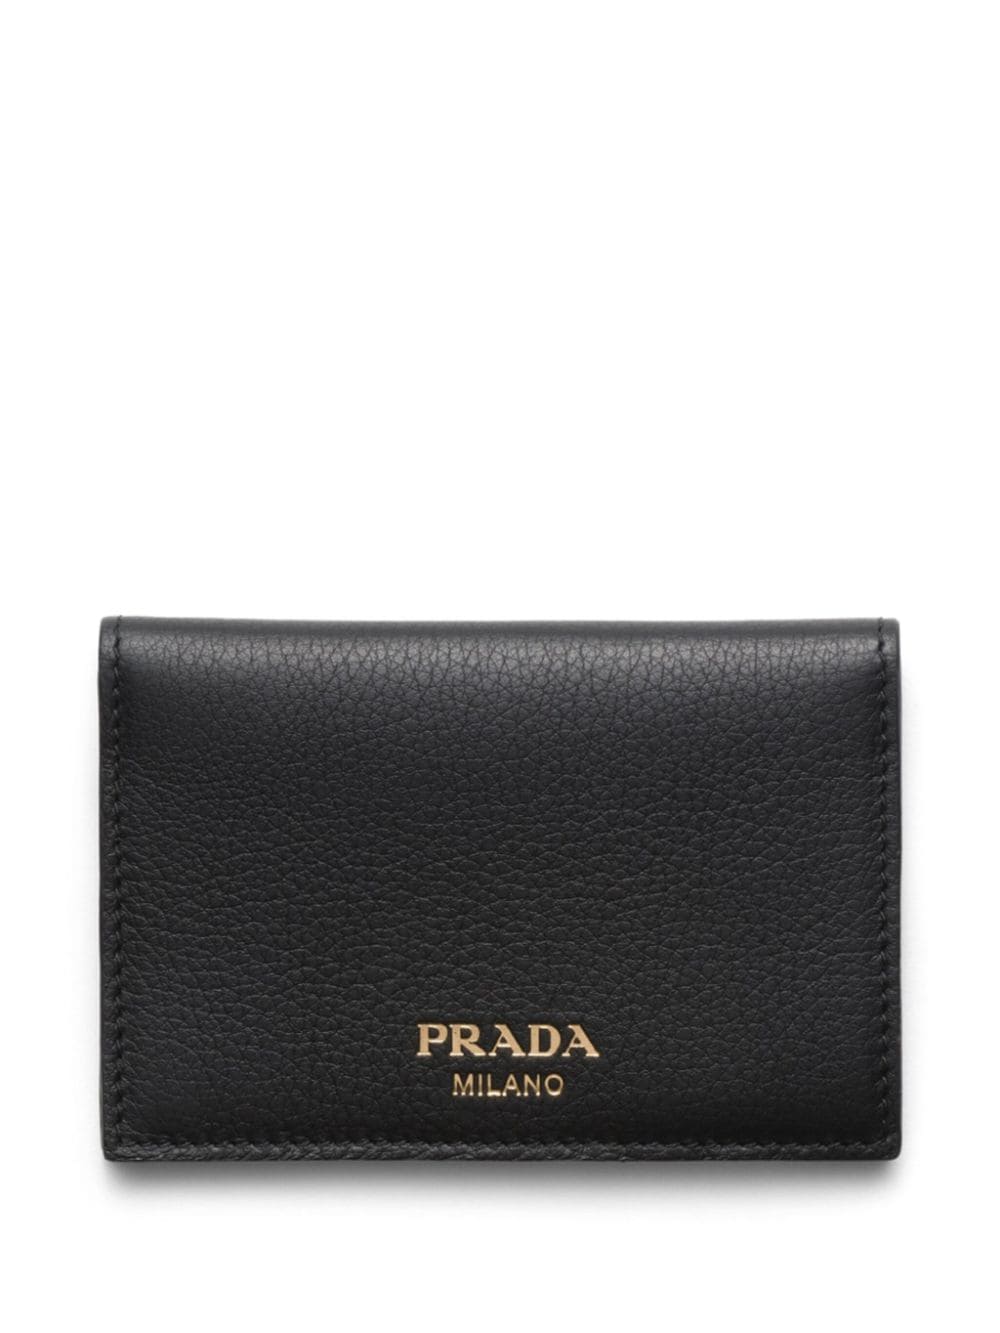 Prada logo-stamp bi-fold cardholder - Black von Prada